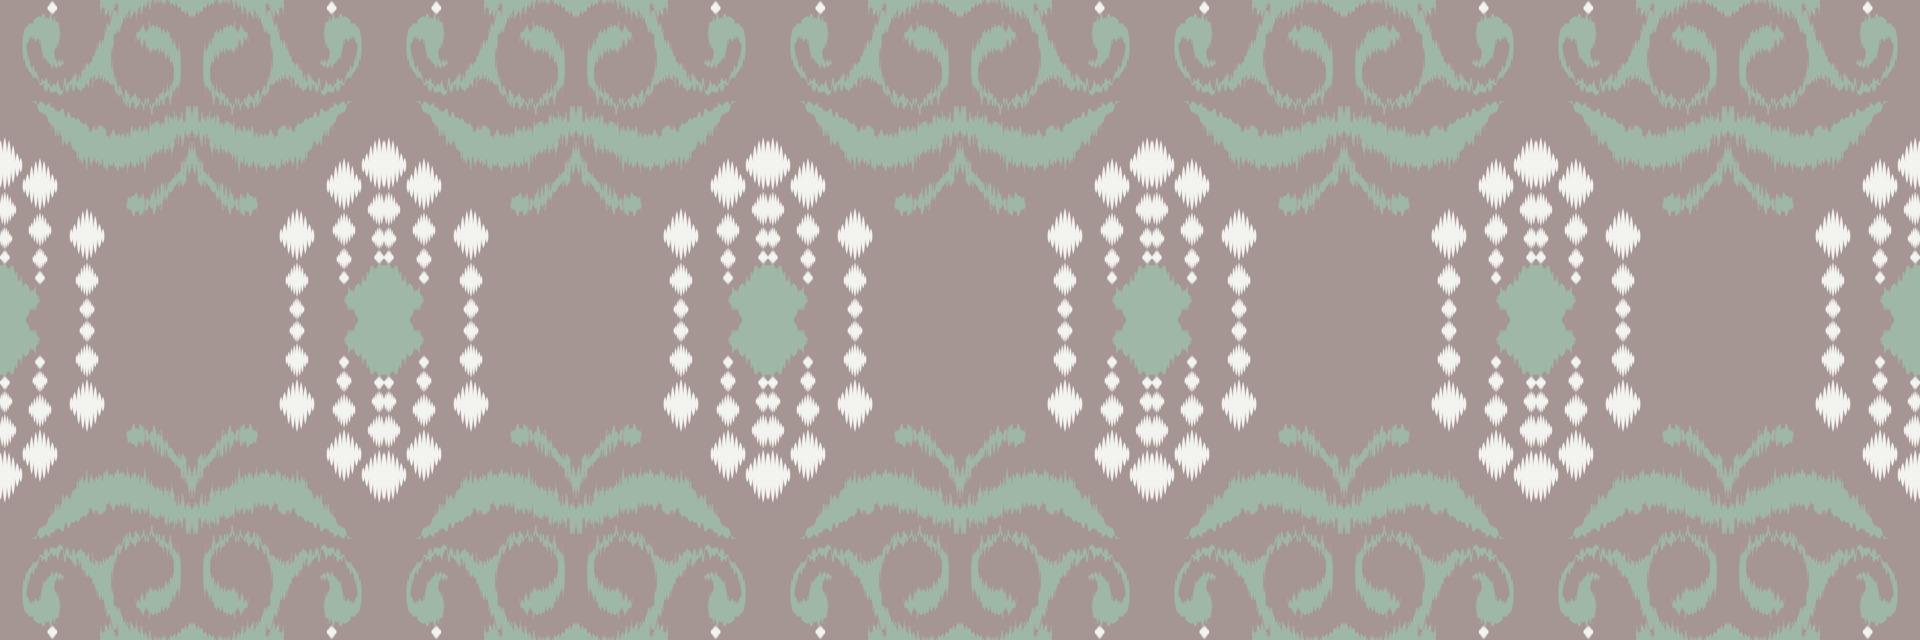 impressão ikat batik têxtil padrão sem costura design de vetor digital para impressão saree kurti borneo tecido borda pincel símbolos amostras elegantes